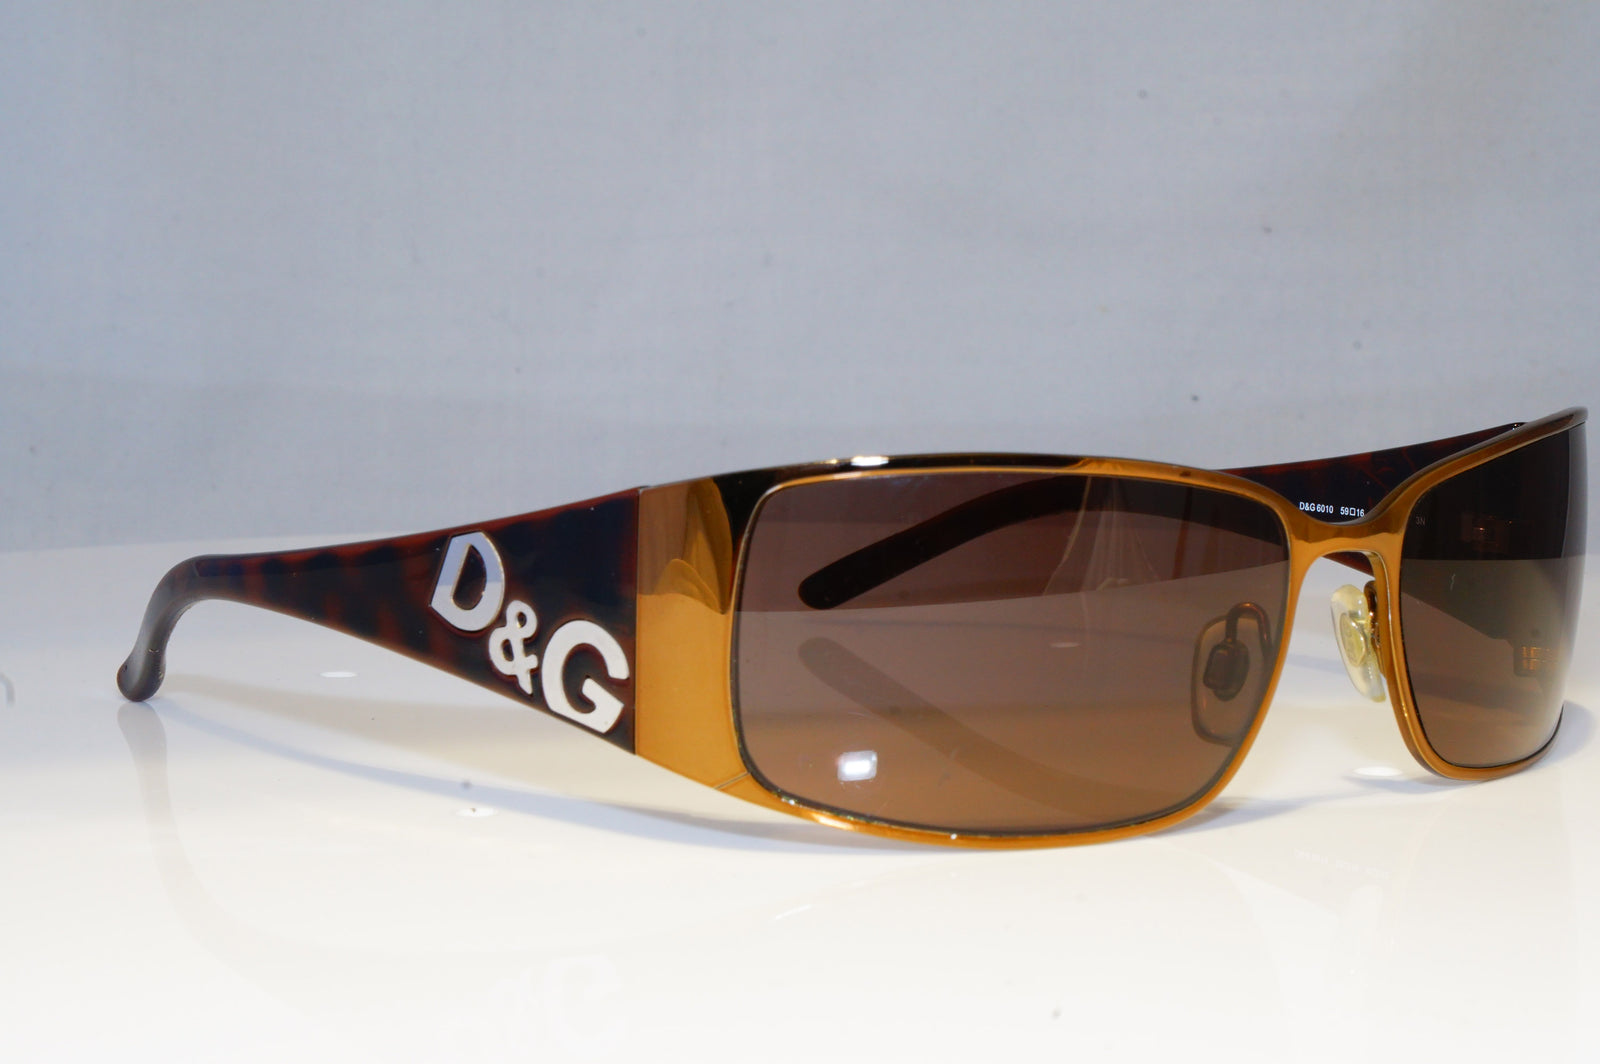 d&g 6010 sunglasses